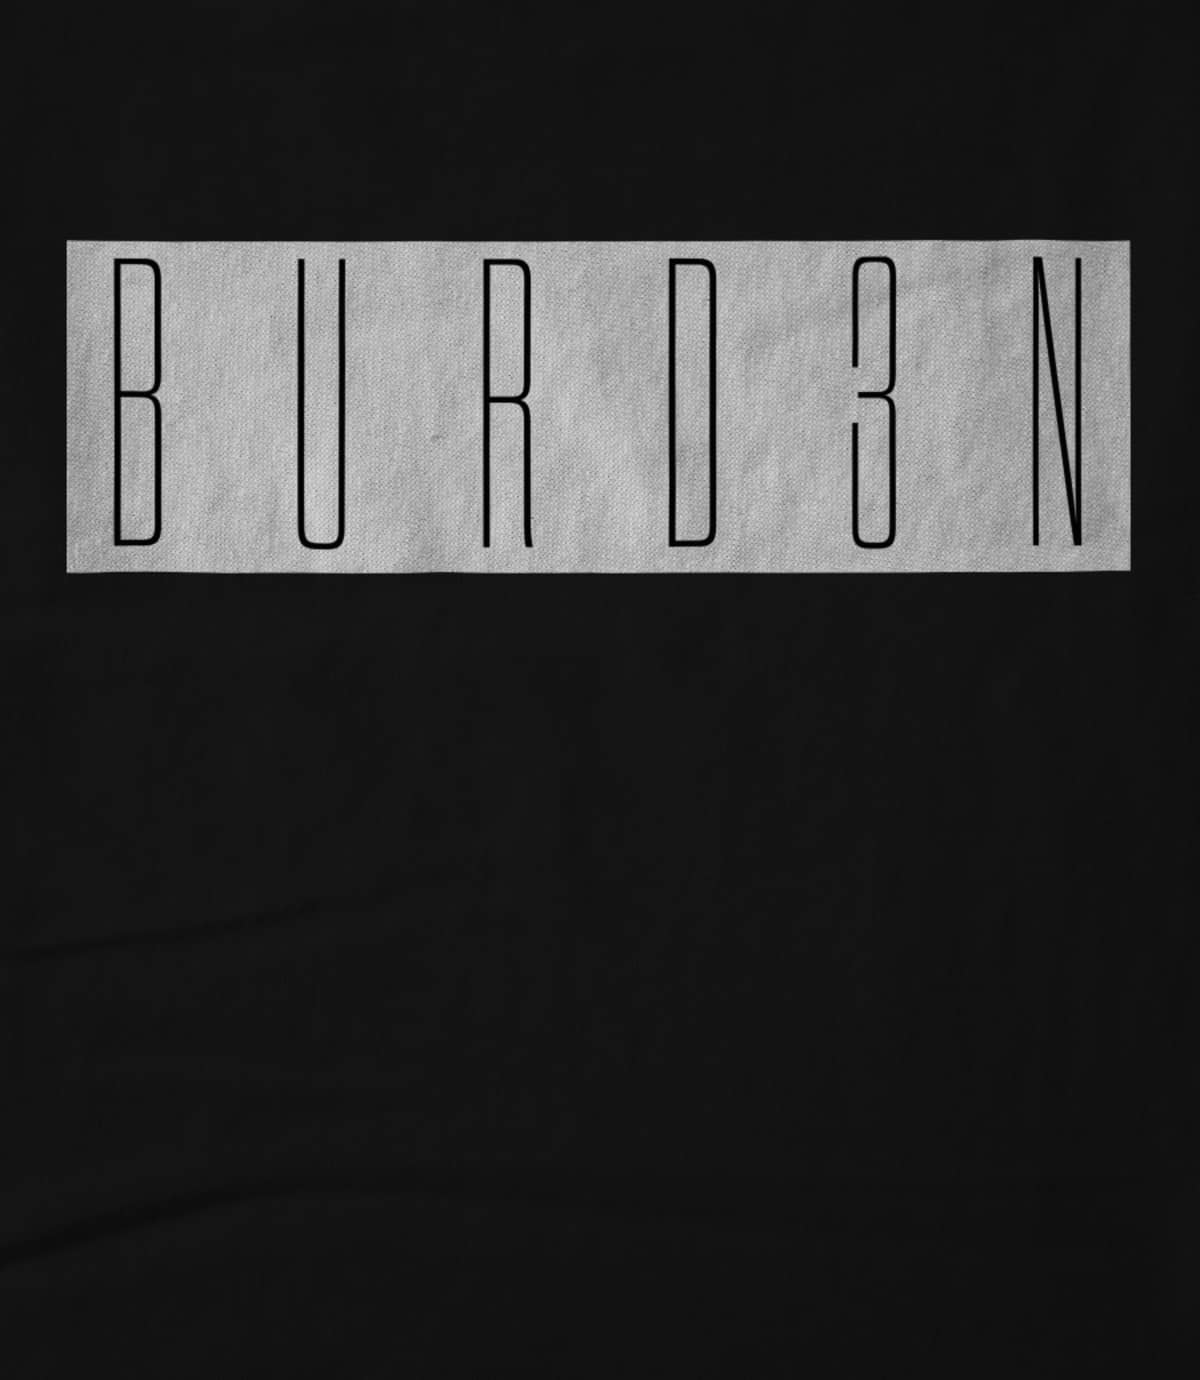 Burden of the sky burd3n   black 1585955447